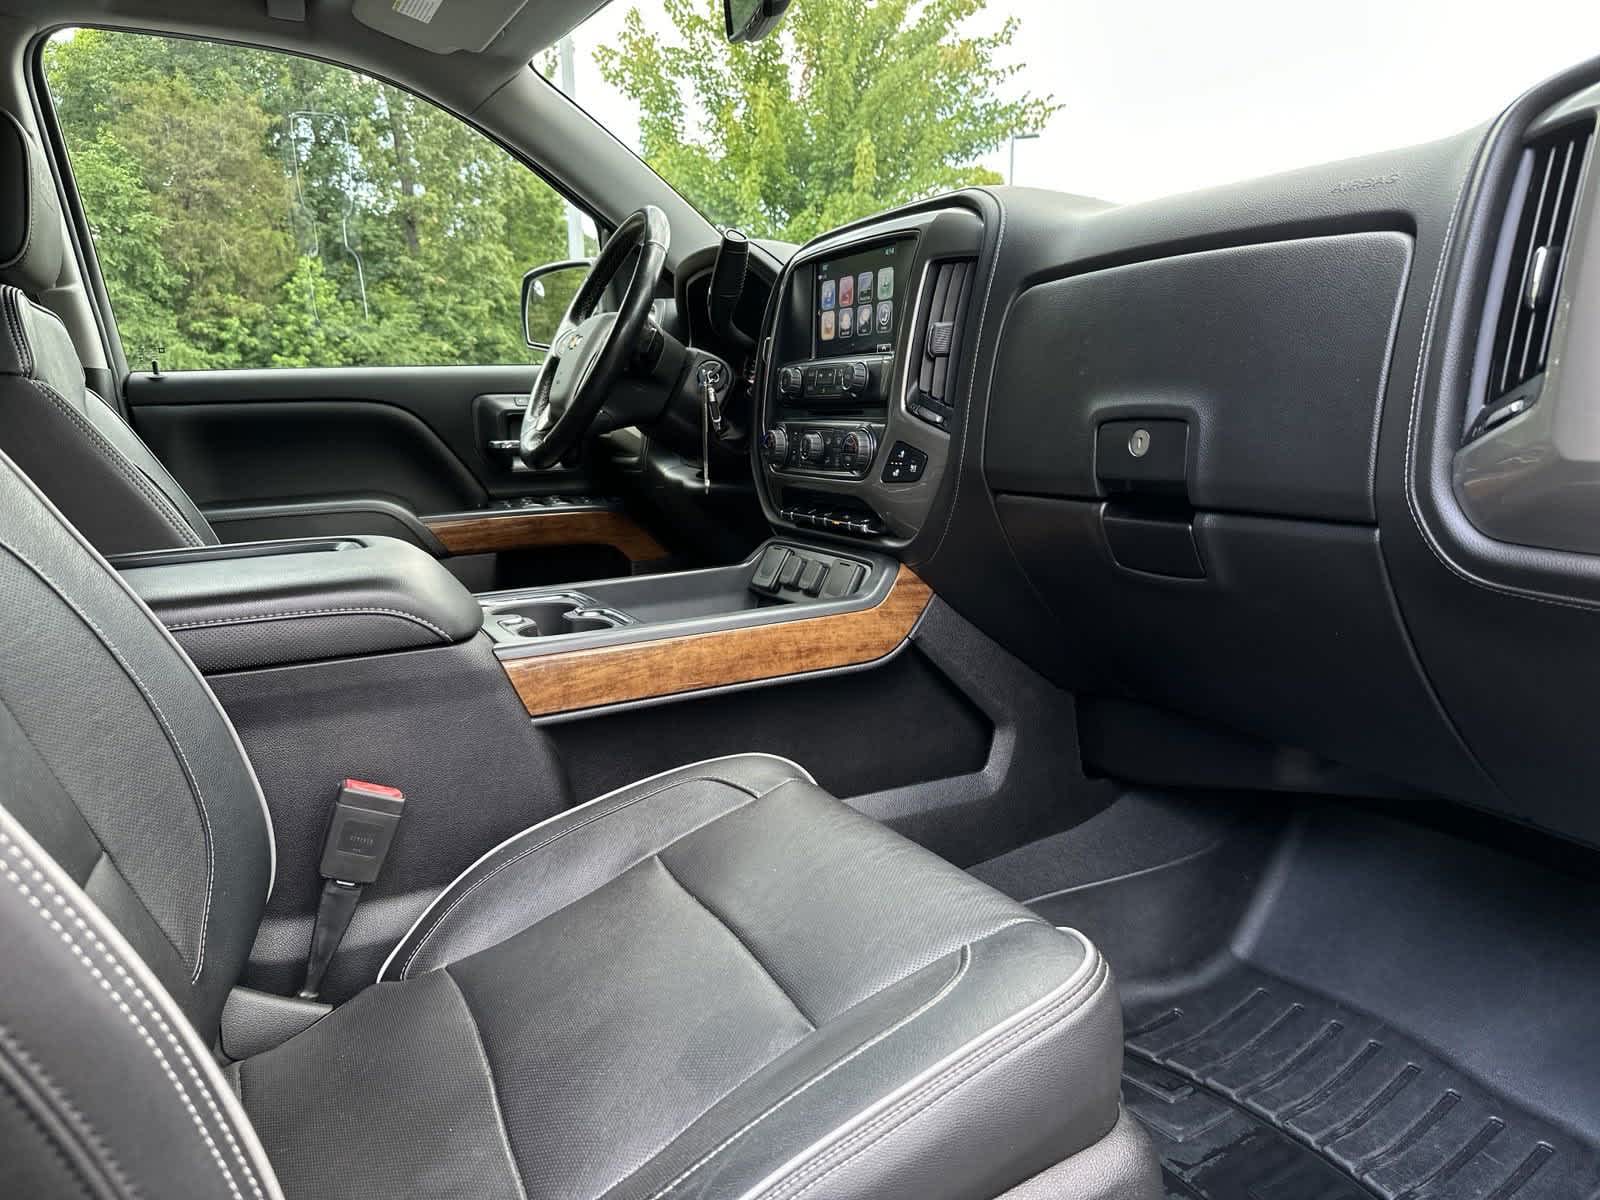 2018 Chevrolet Silverado 1500 High Country 4WD Crew Cab 143.5 31